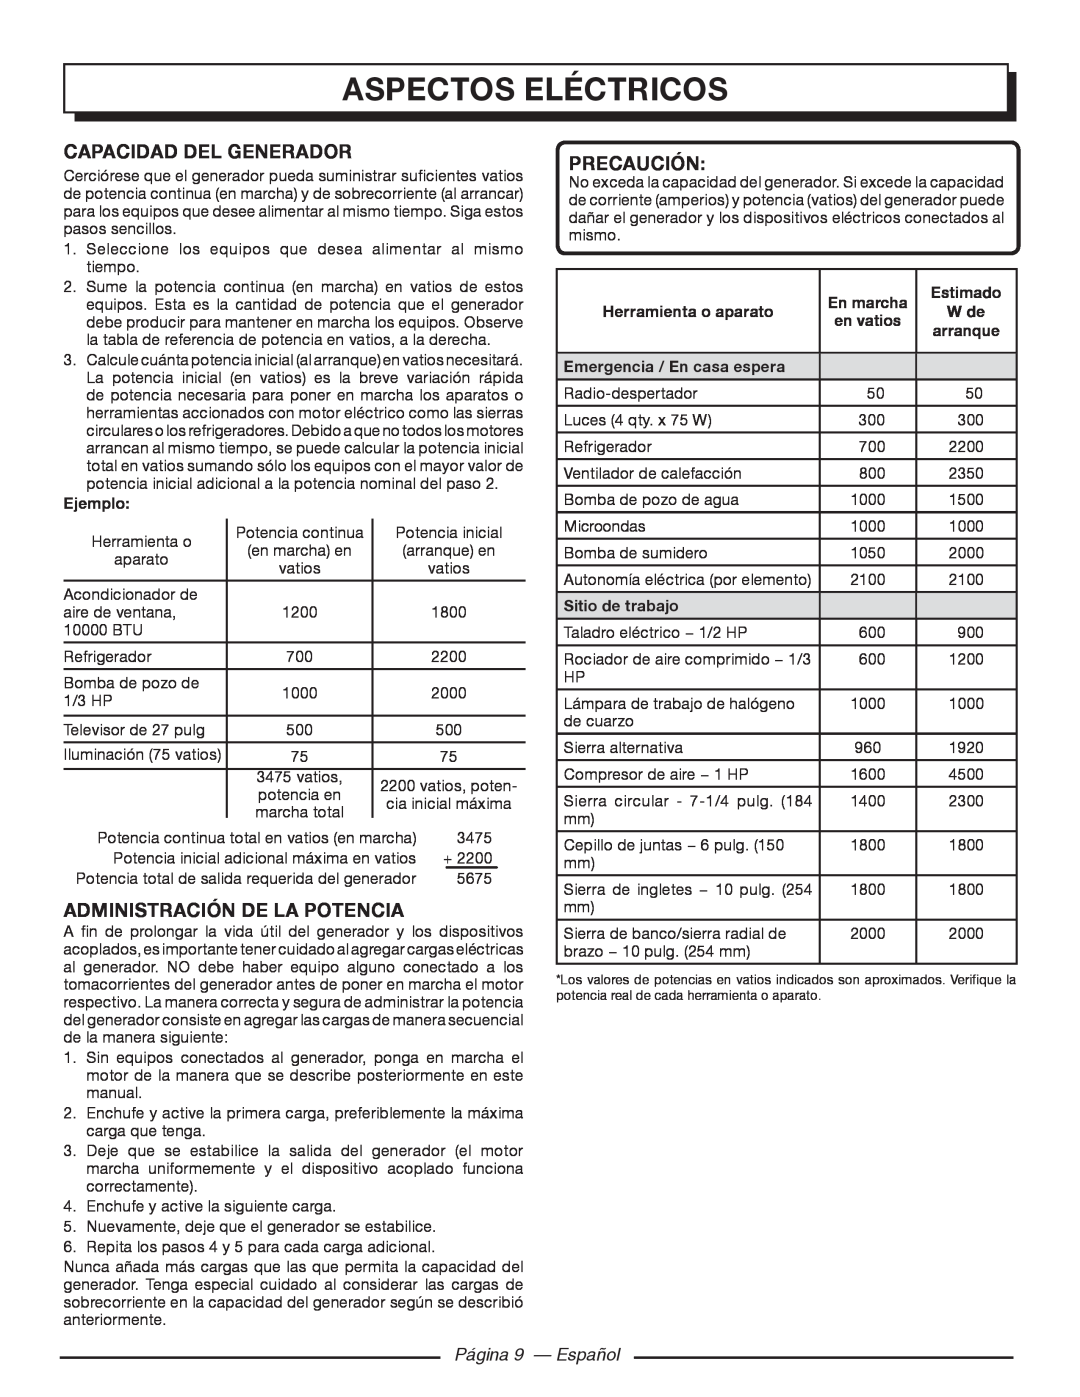 Homelite HGCA5700 Capacidad del generador, Administración De La Potencia, Página 9 — Español, aspectos eléctricos 